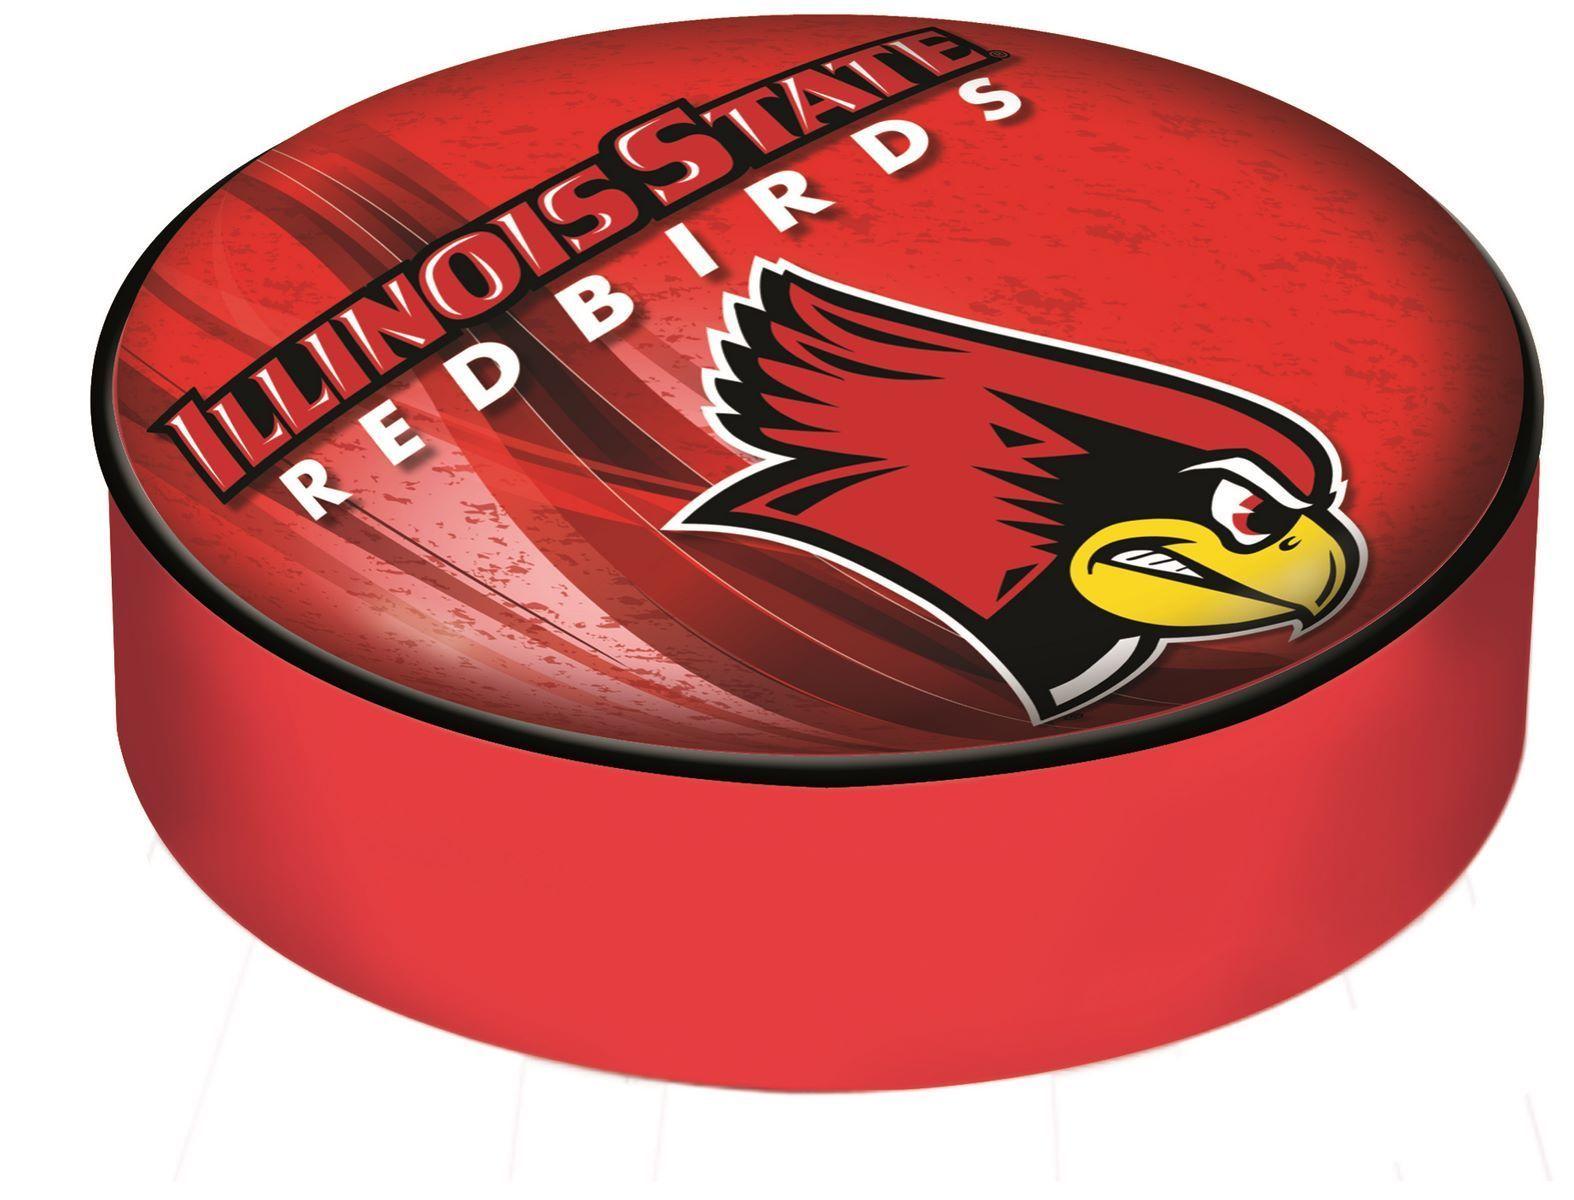 Illinois State Redbirds Logo - Illinois State University Seat Cover - Illinois State Redbirds Logo